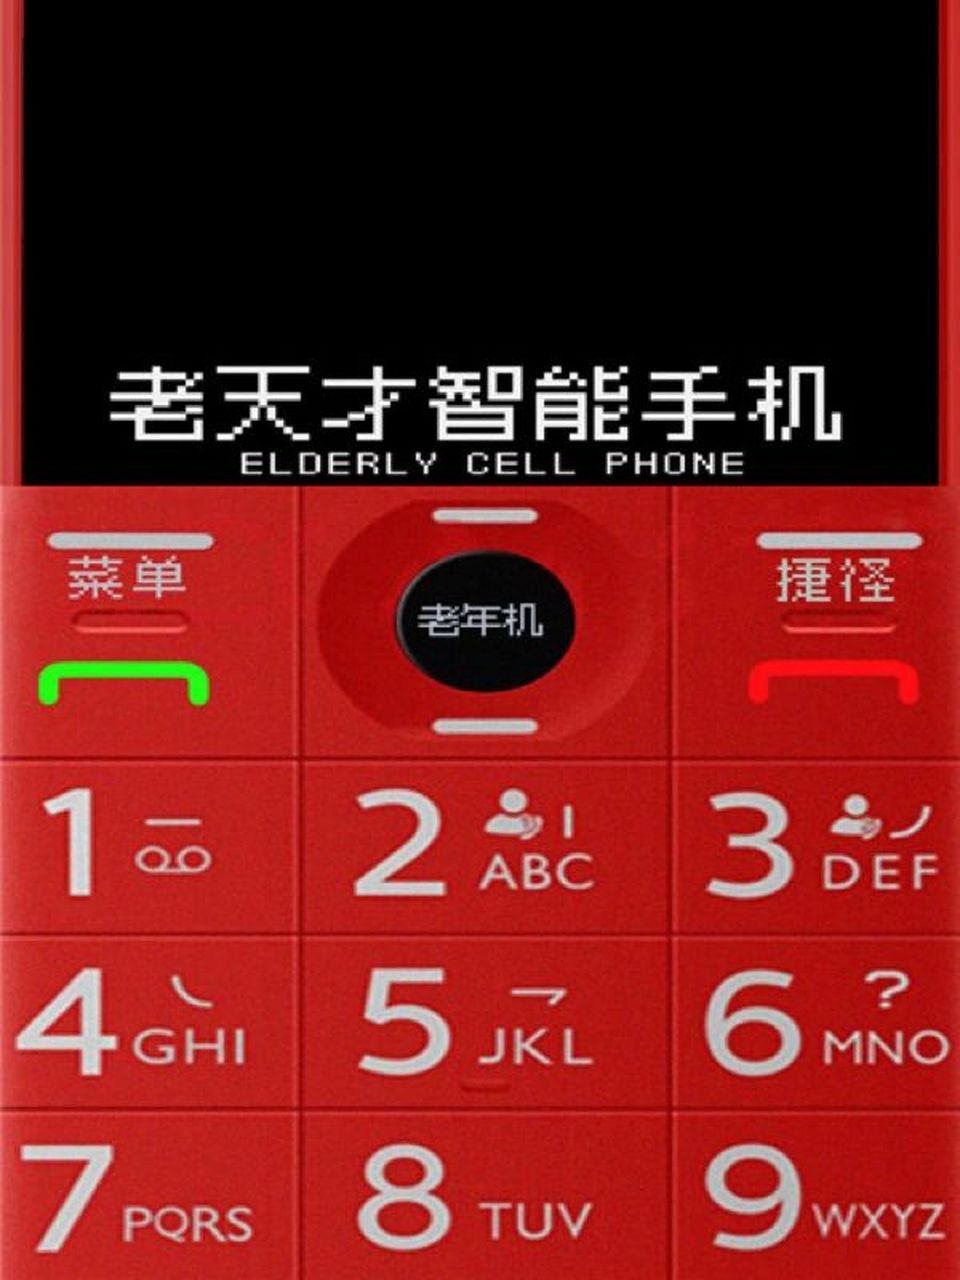 老年机手机通话界面图片